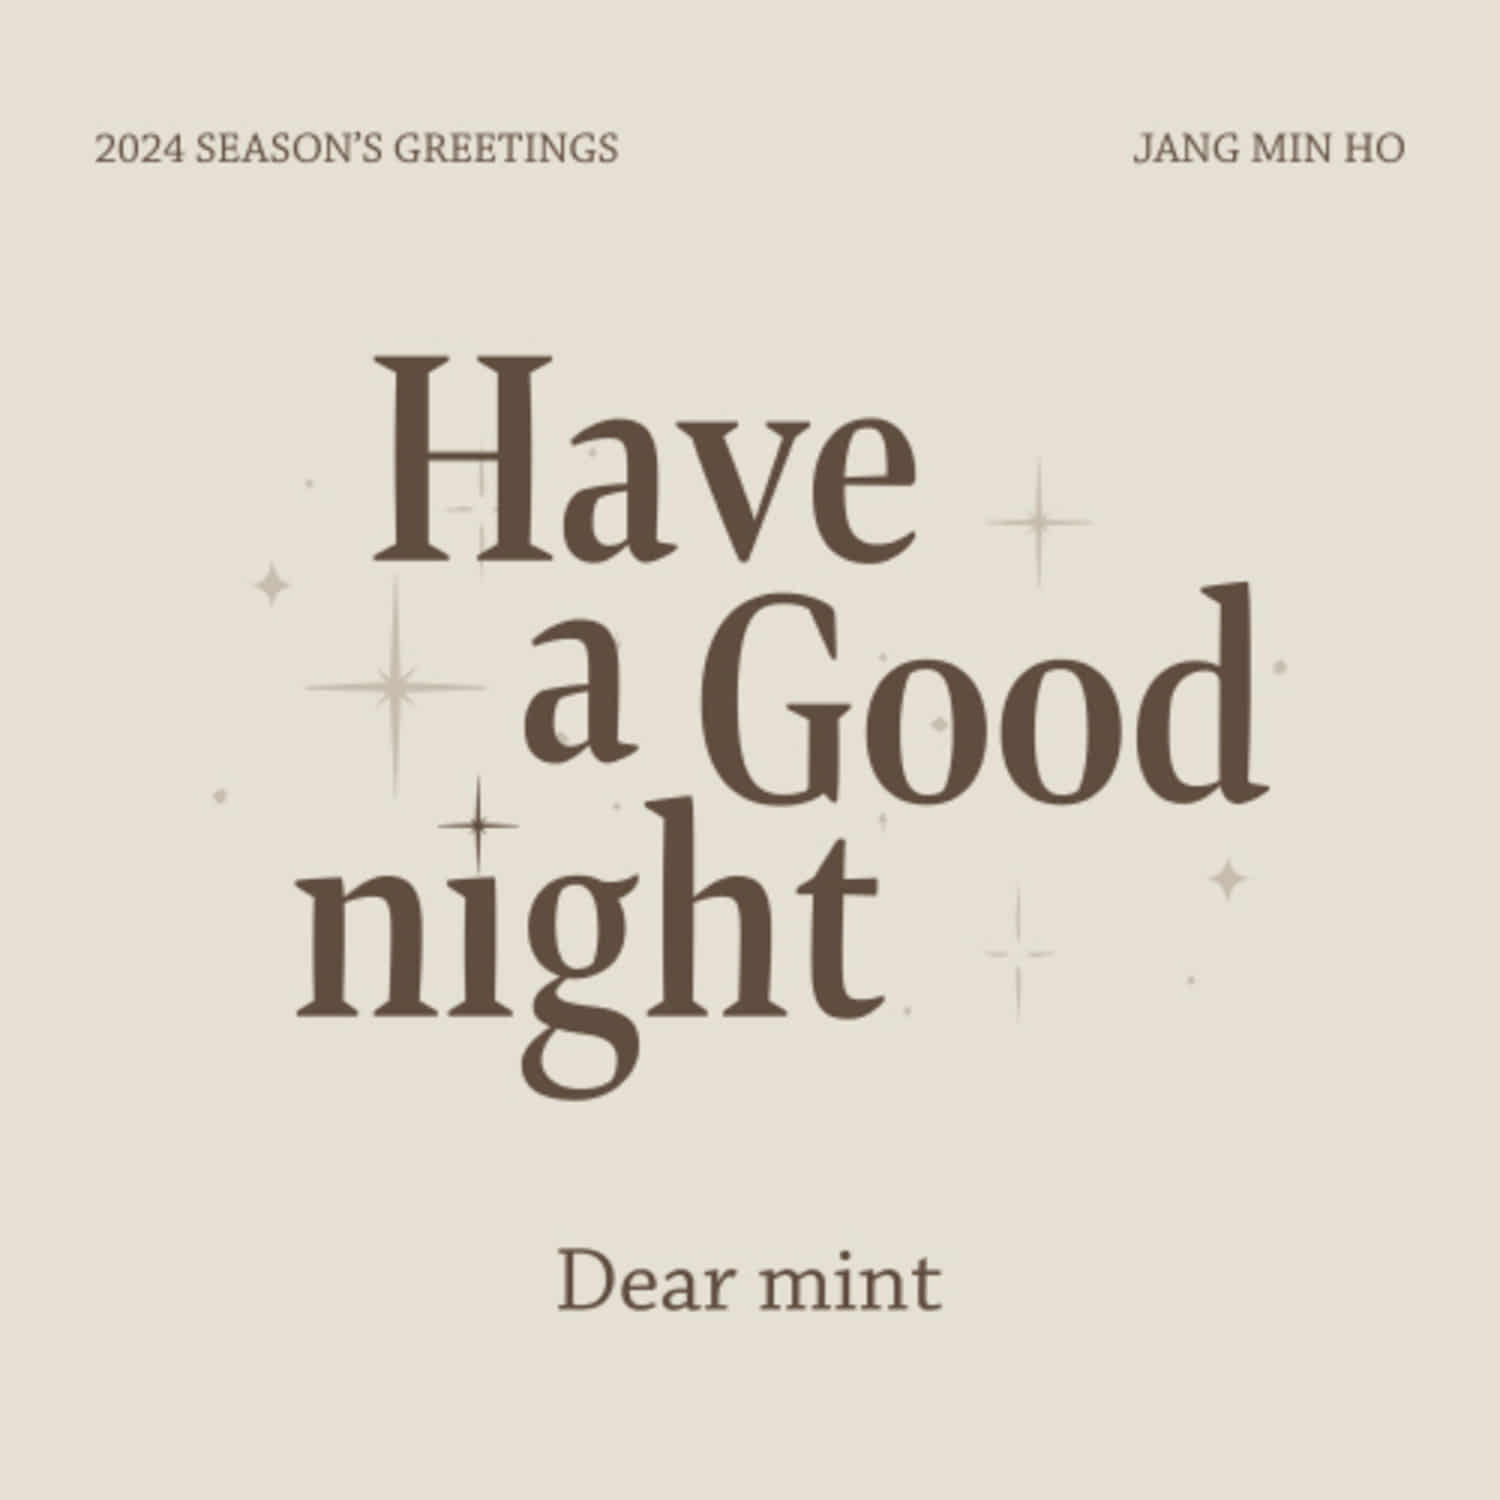 장민호(JANG MINHO) - 2024 SEASON\&#039;S GREETINGS [Have a Good night]